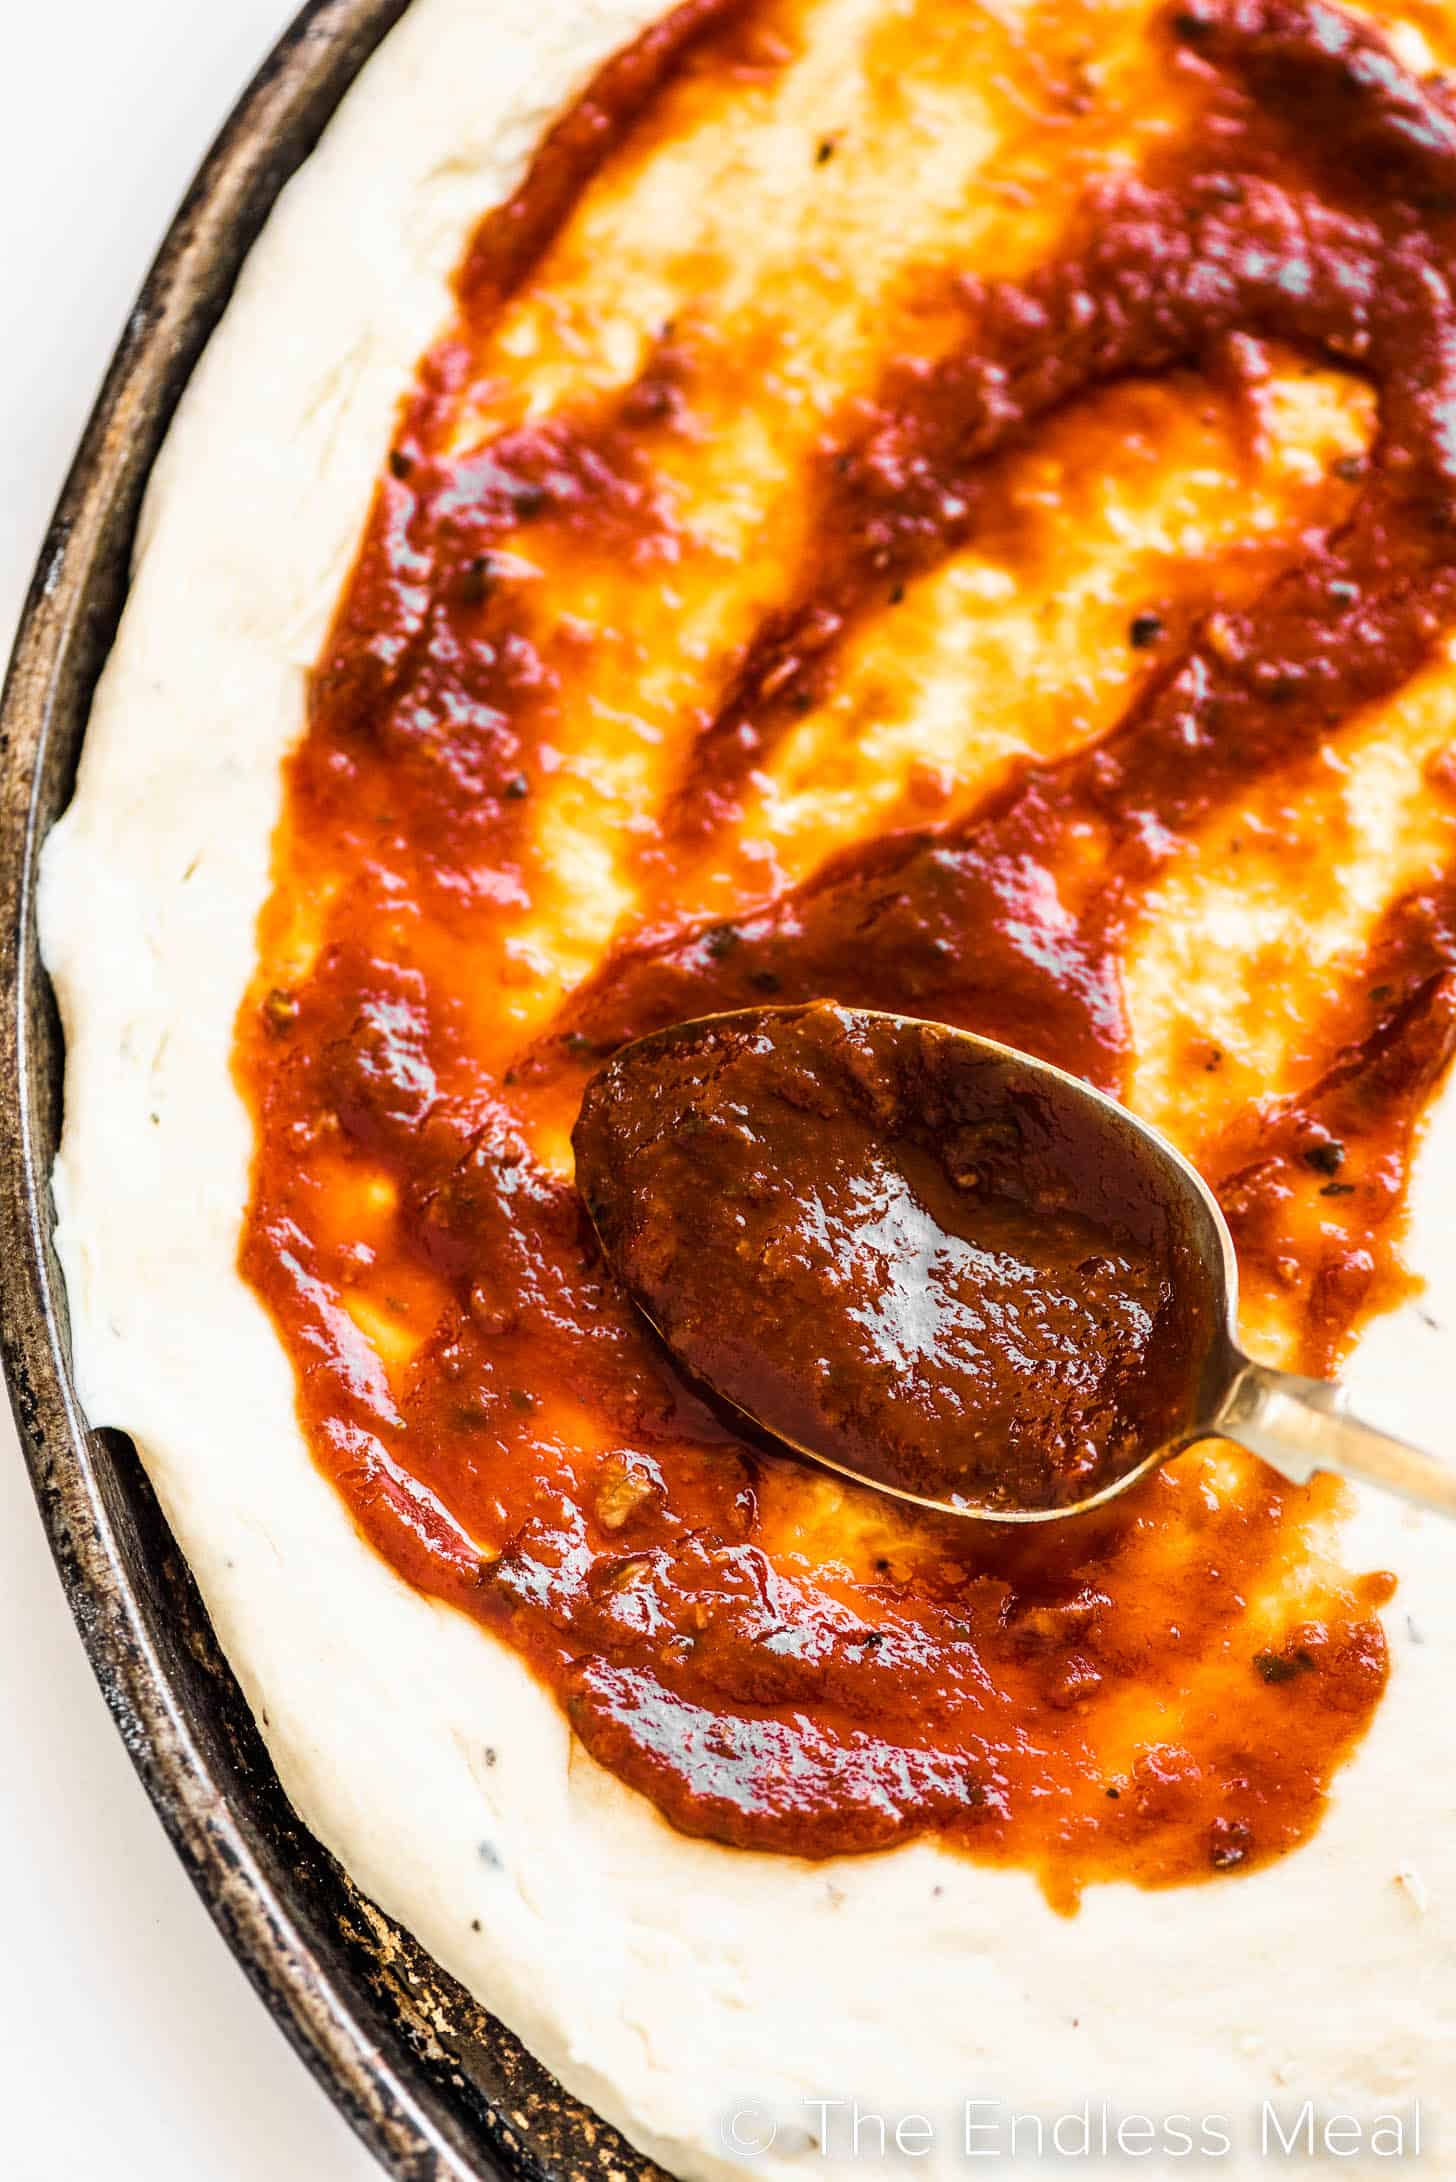 salsa per pizza fatta in casa spalmata su una crosta di pizza